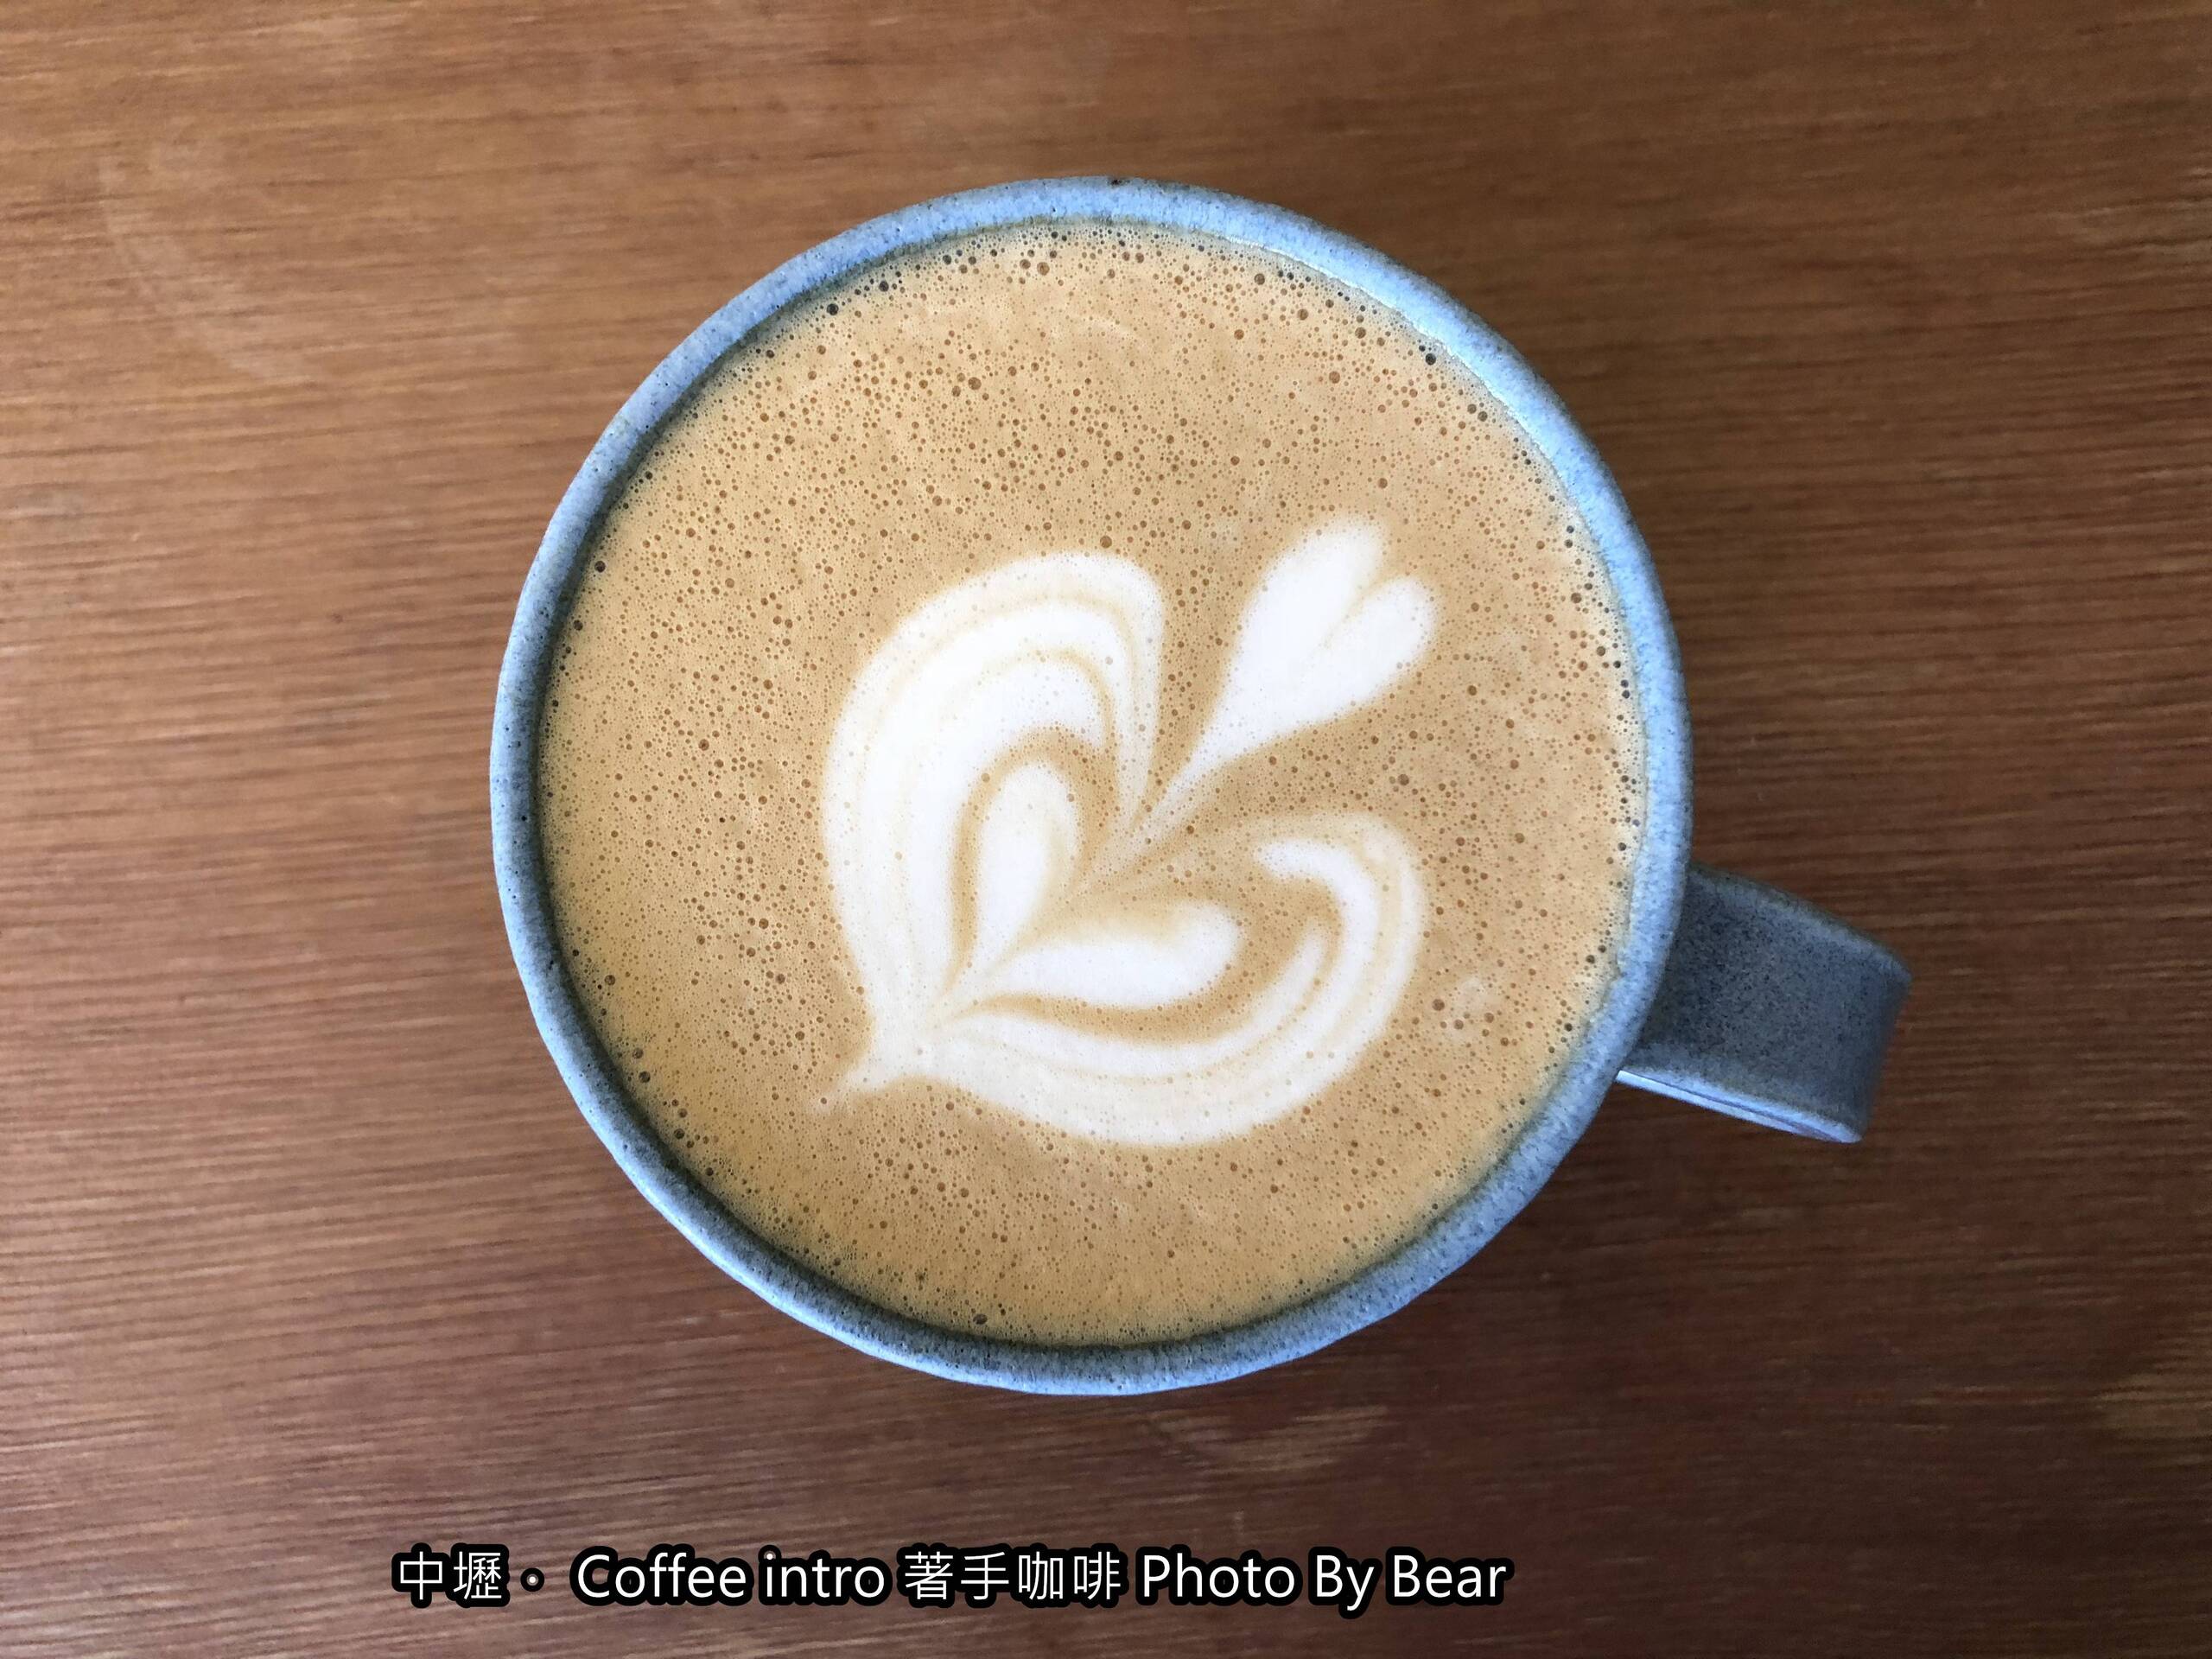 【中壢】「著手咖啡Coffee Intro in Taoyuan（老宅咖啡/自家烘焙/手沖咖啡/磅蛋糕/近內壢車站）」